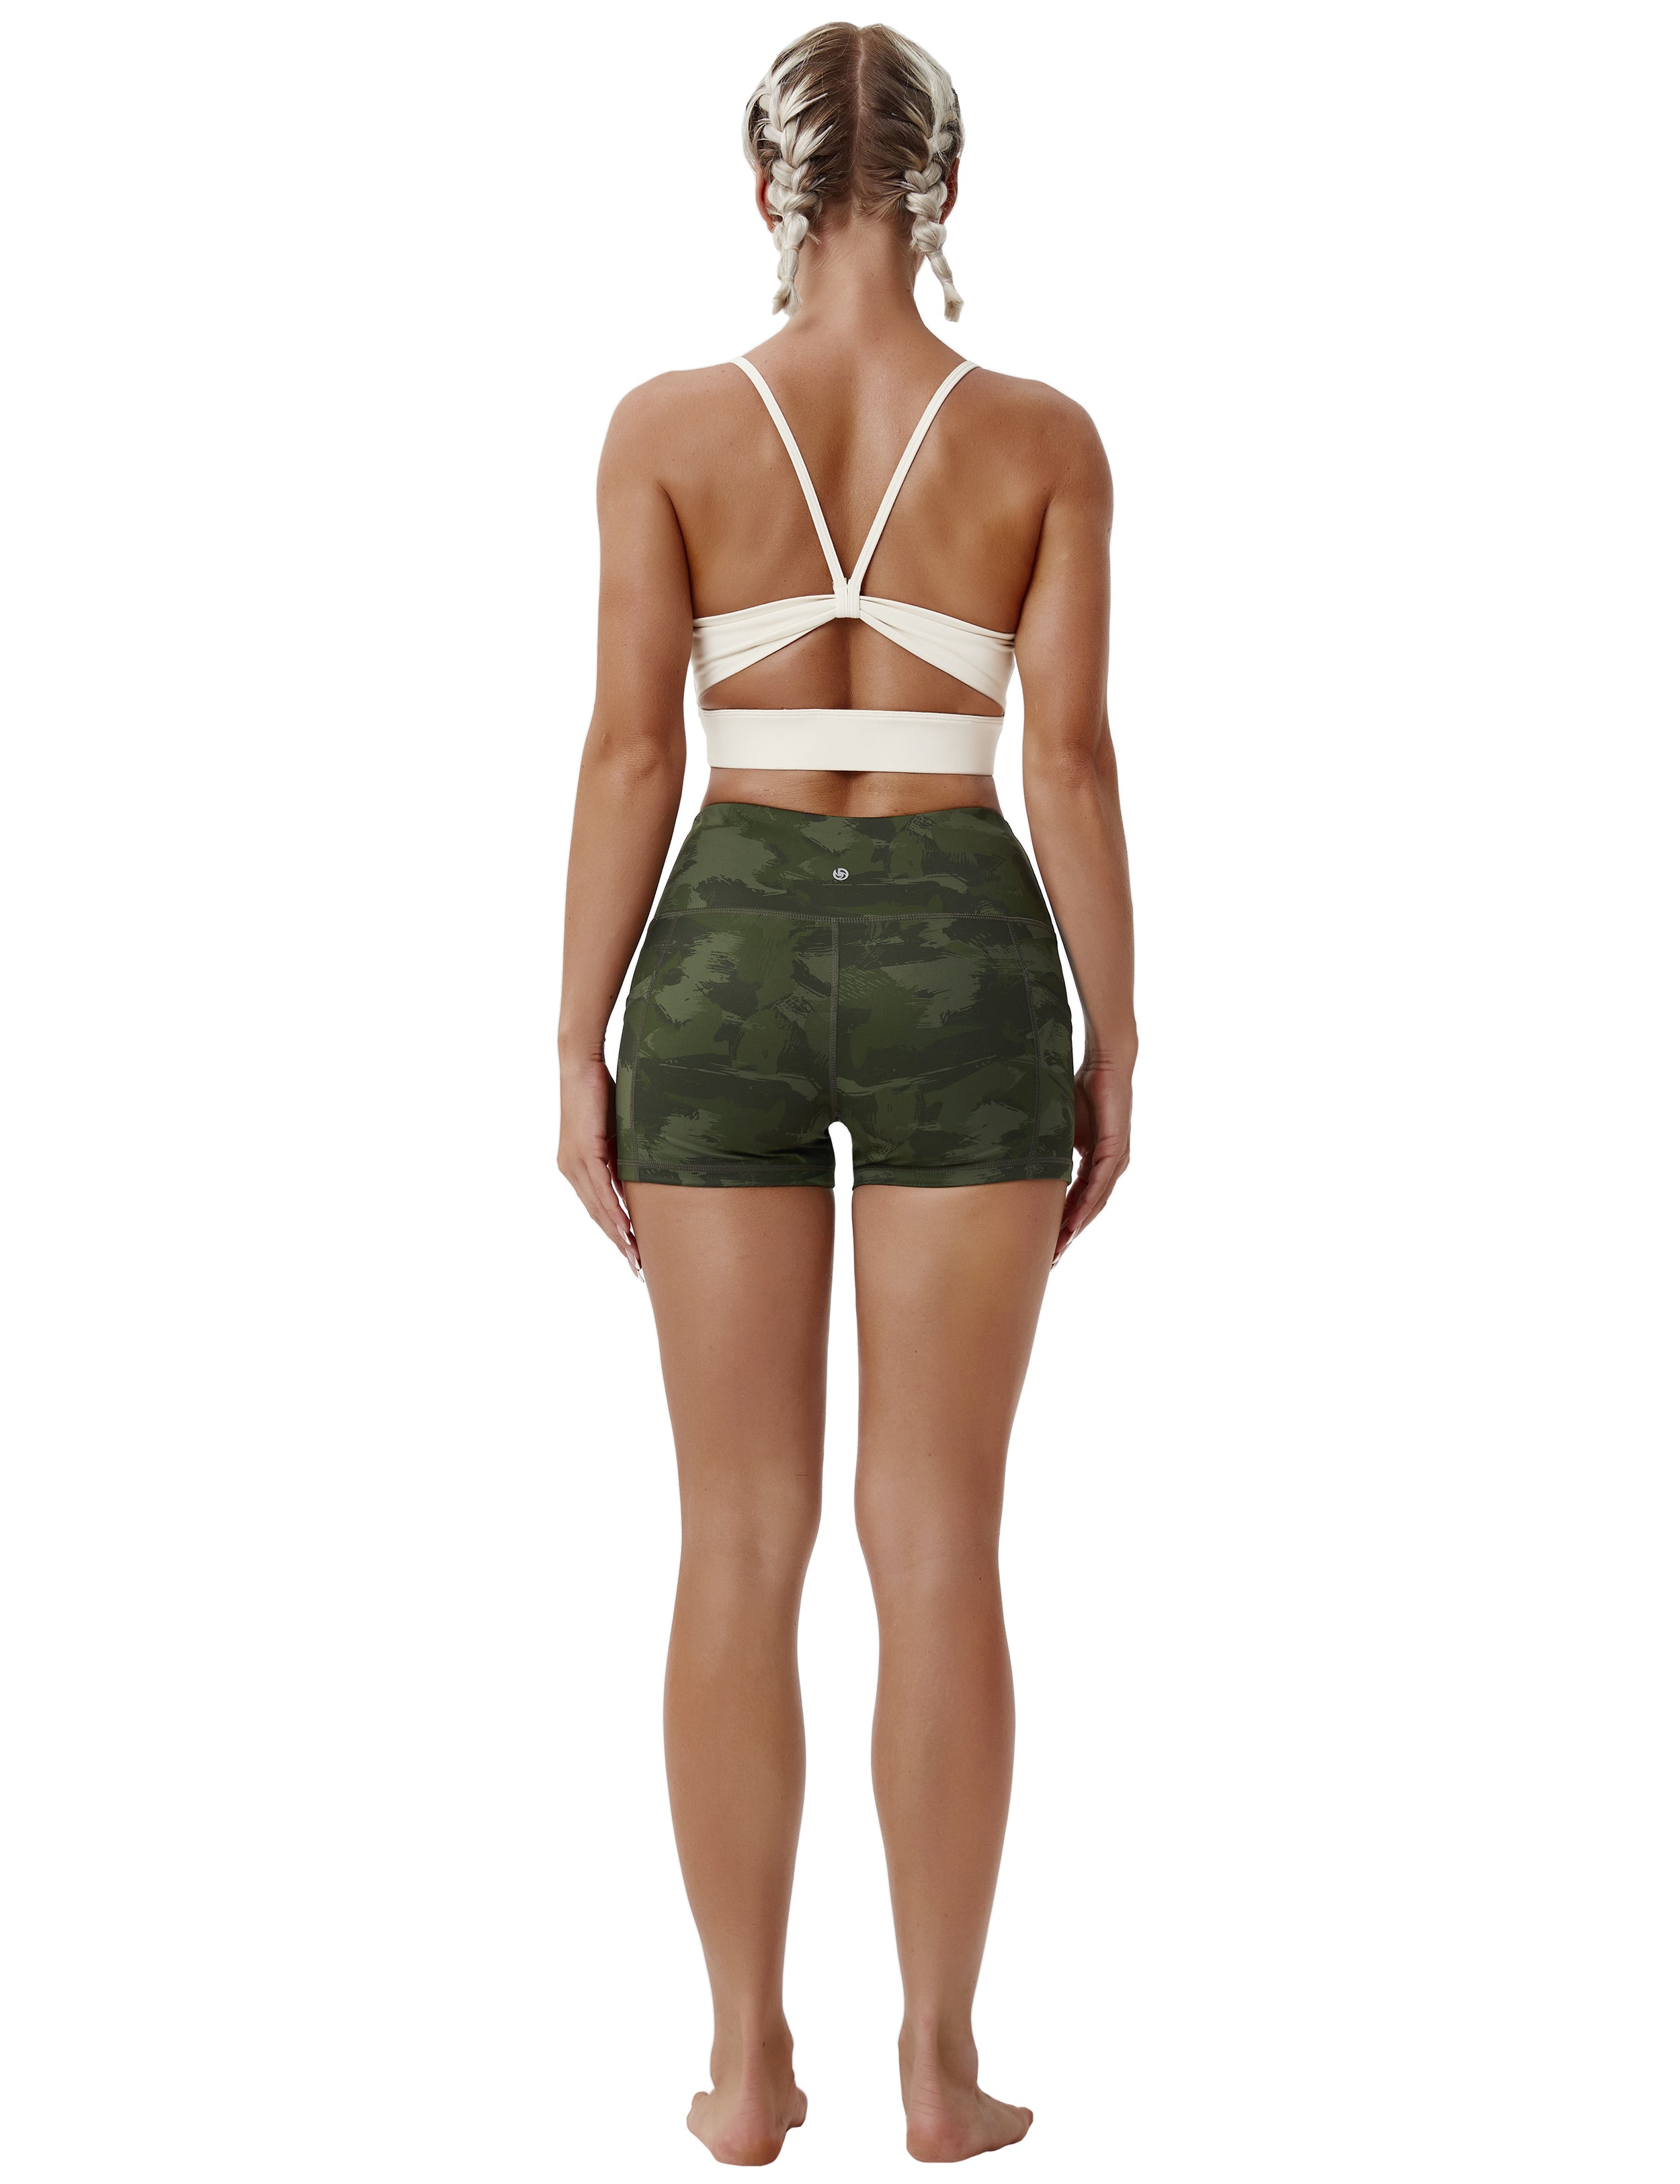 Baocc Yoga Shorts Women Seamless High Waist Shorts Biker Shorts Yoga  Workout Short Pants Shorts for Women Mint Green 